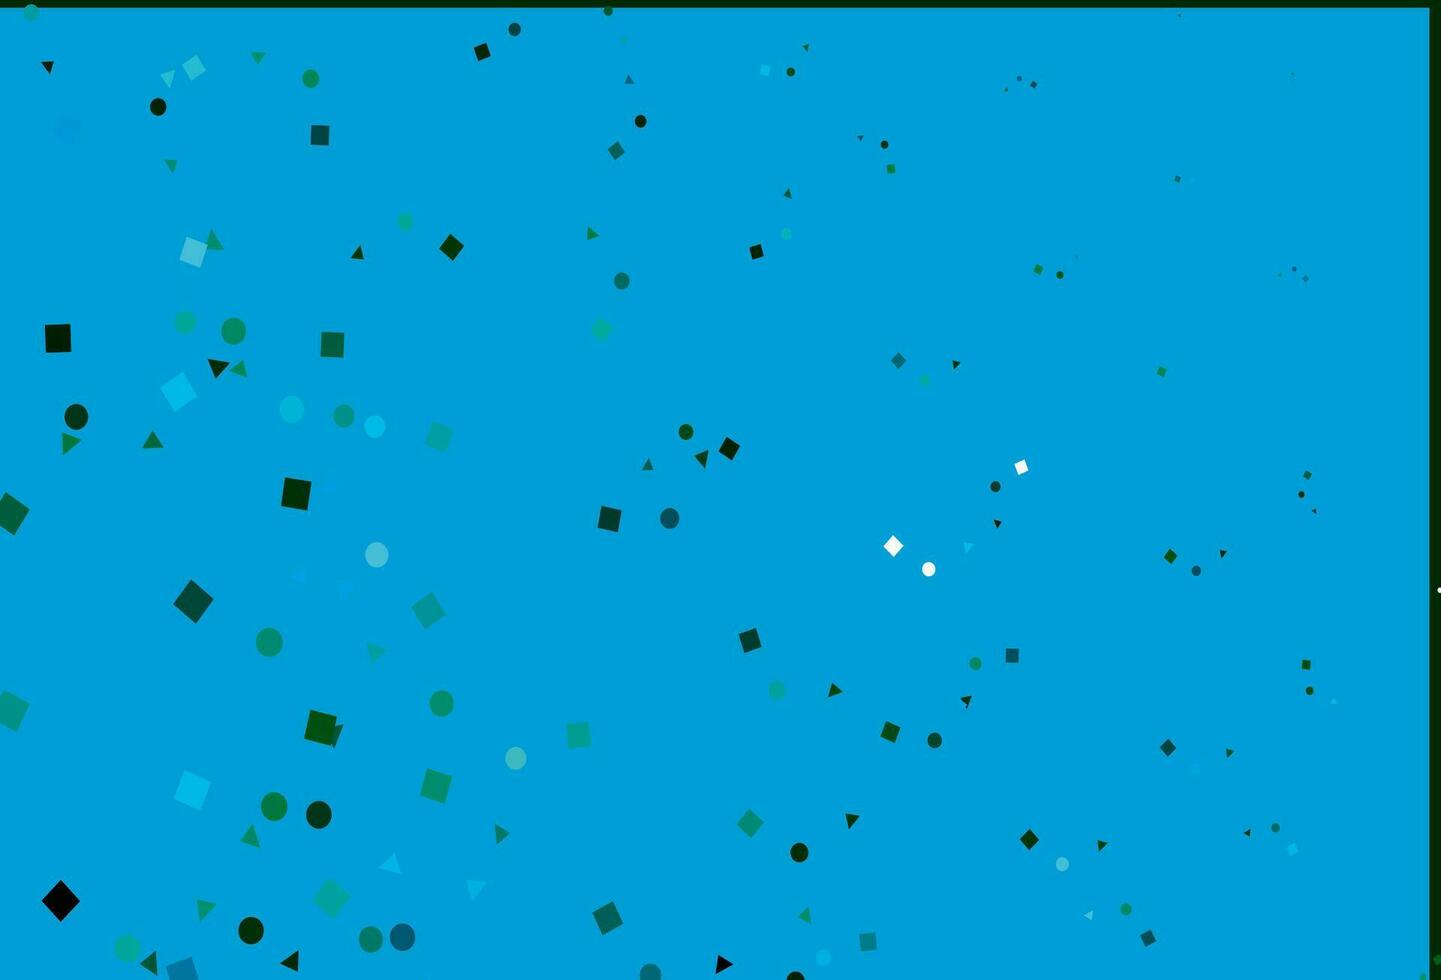 motif vectoriel bleu clair et vert dans un style polygonal avec des cercles.